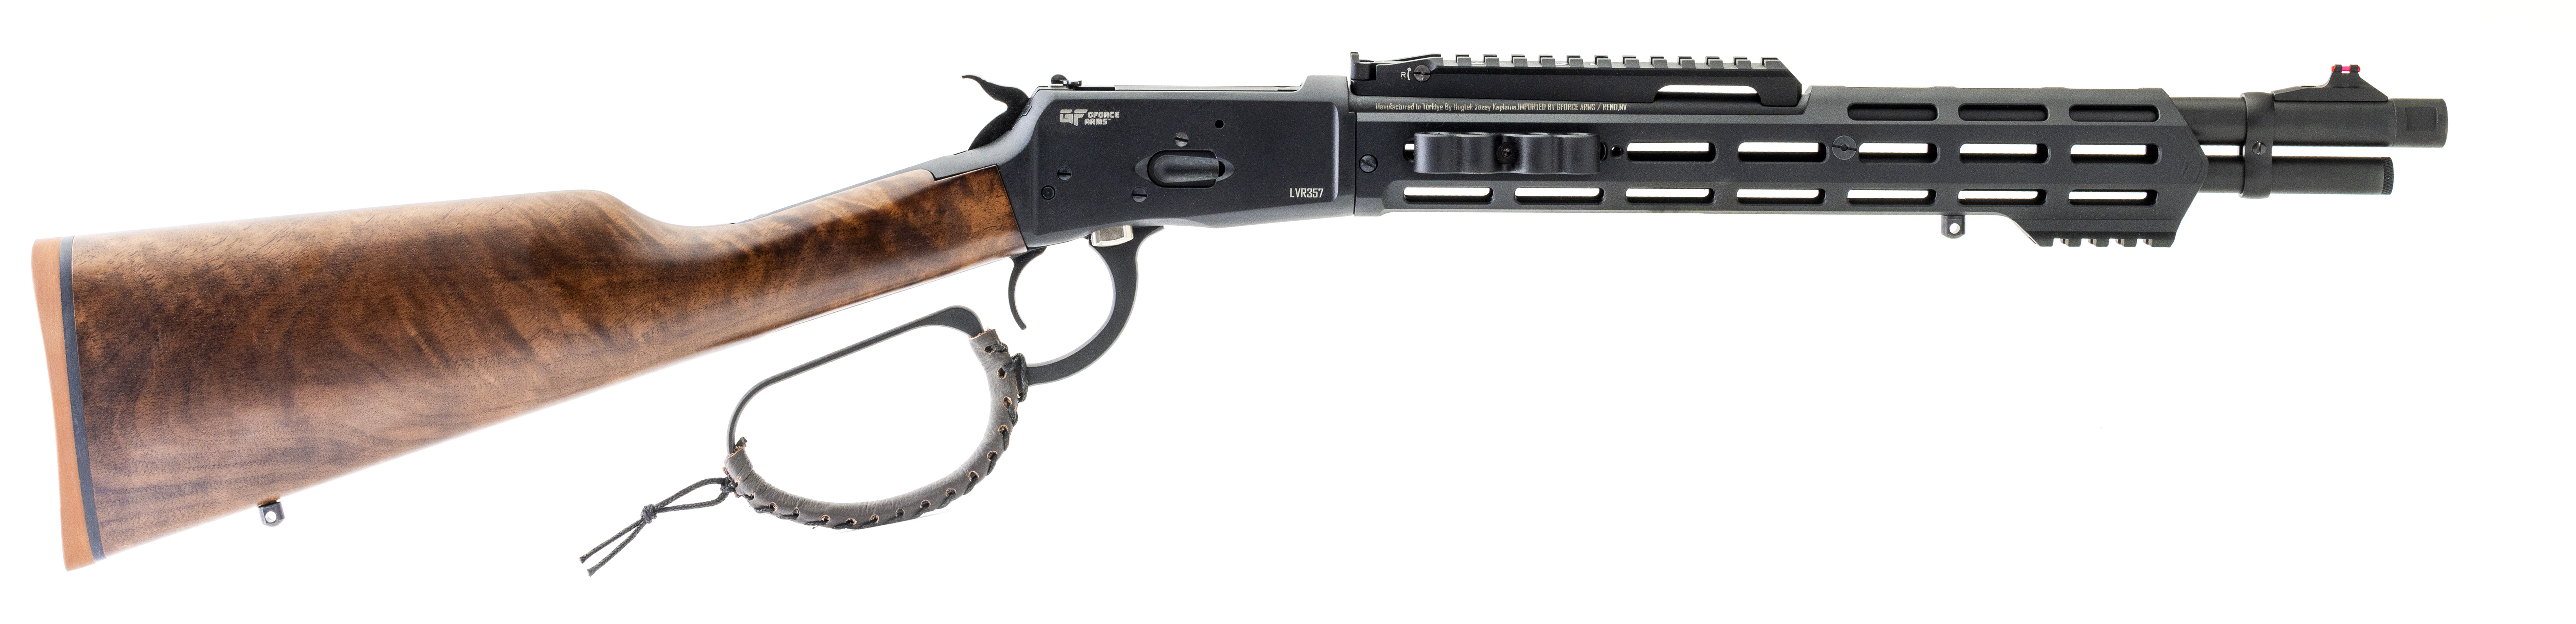 GForce Arms Announces the Huckleberry LTAC357 Lever Action Rifle